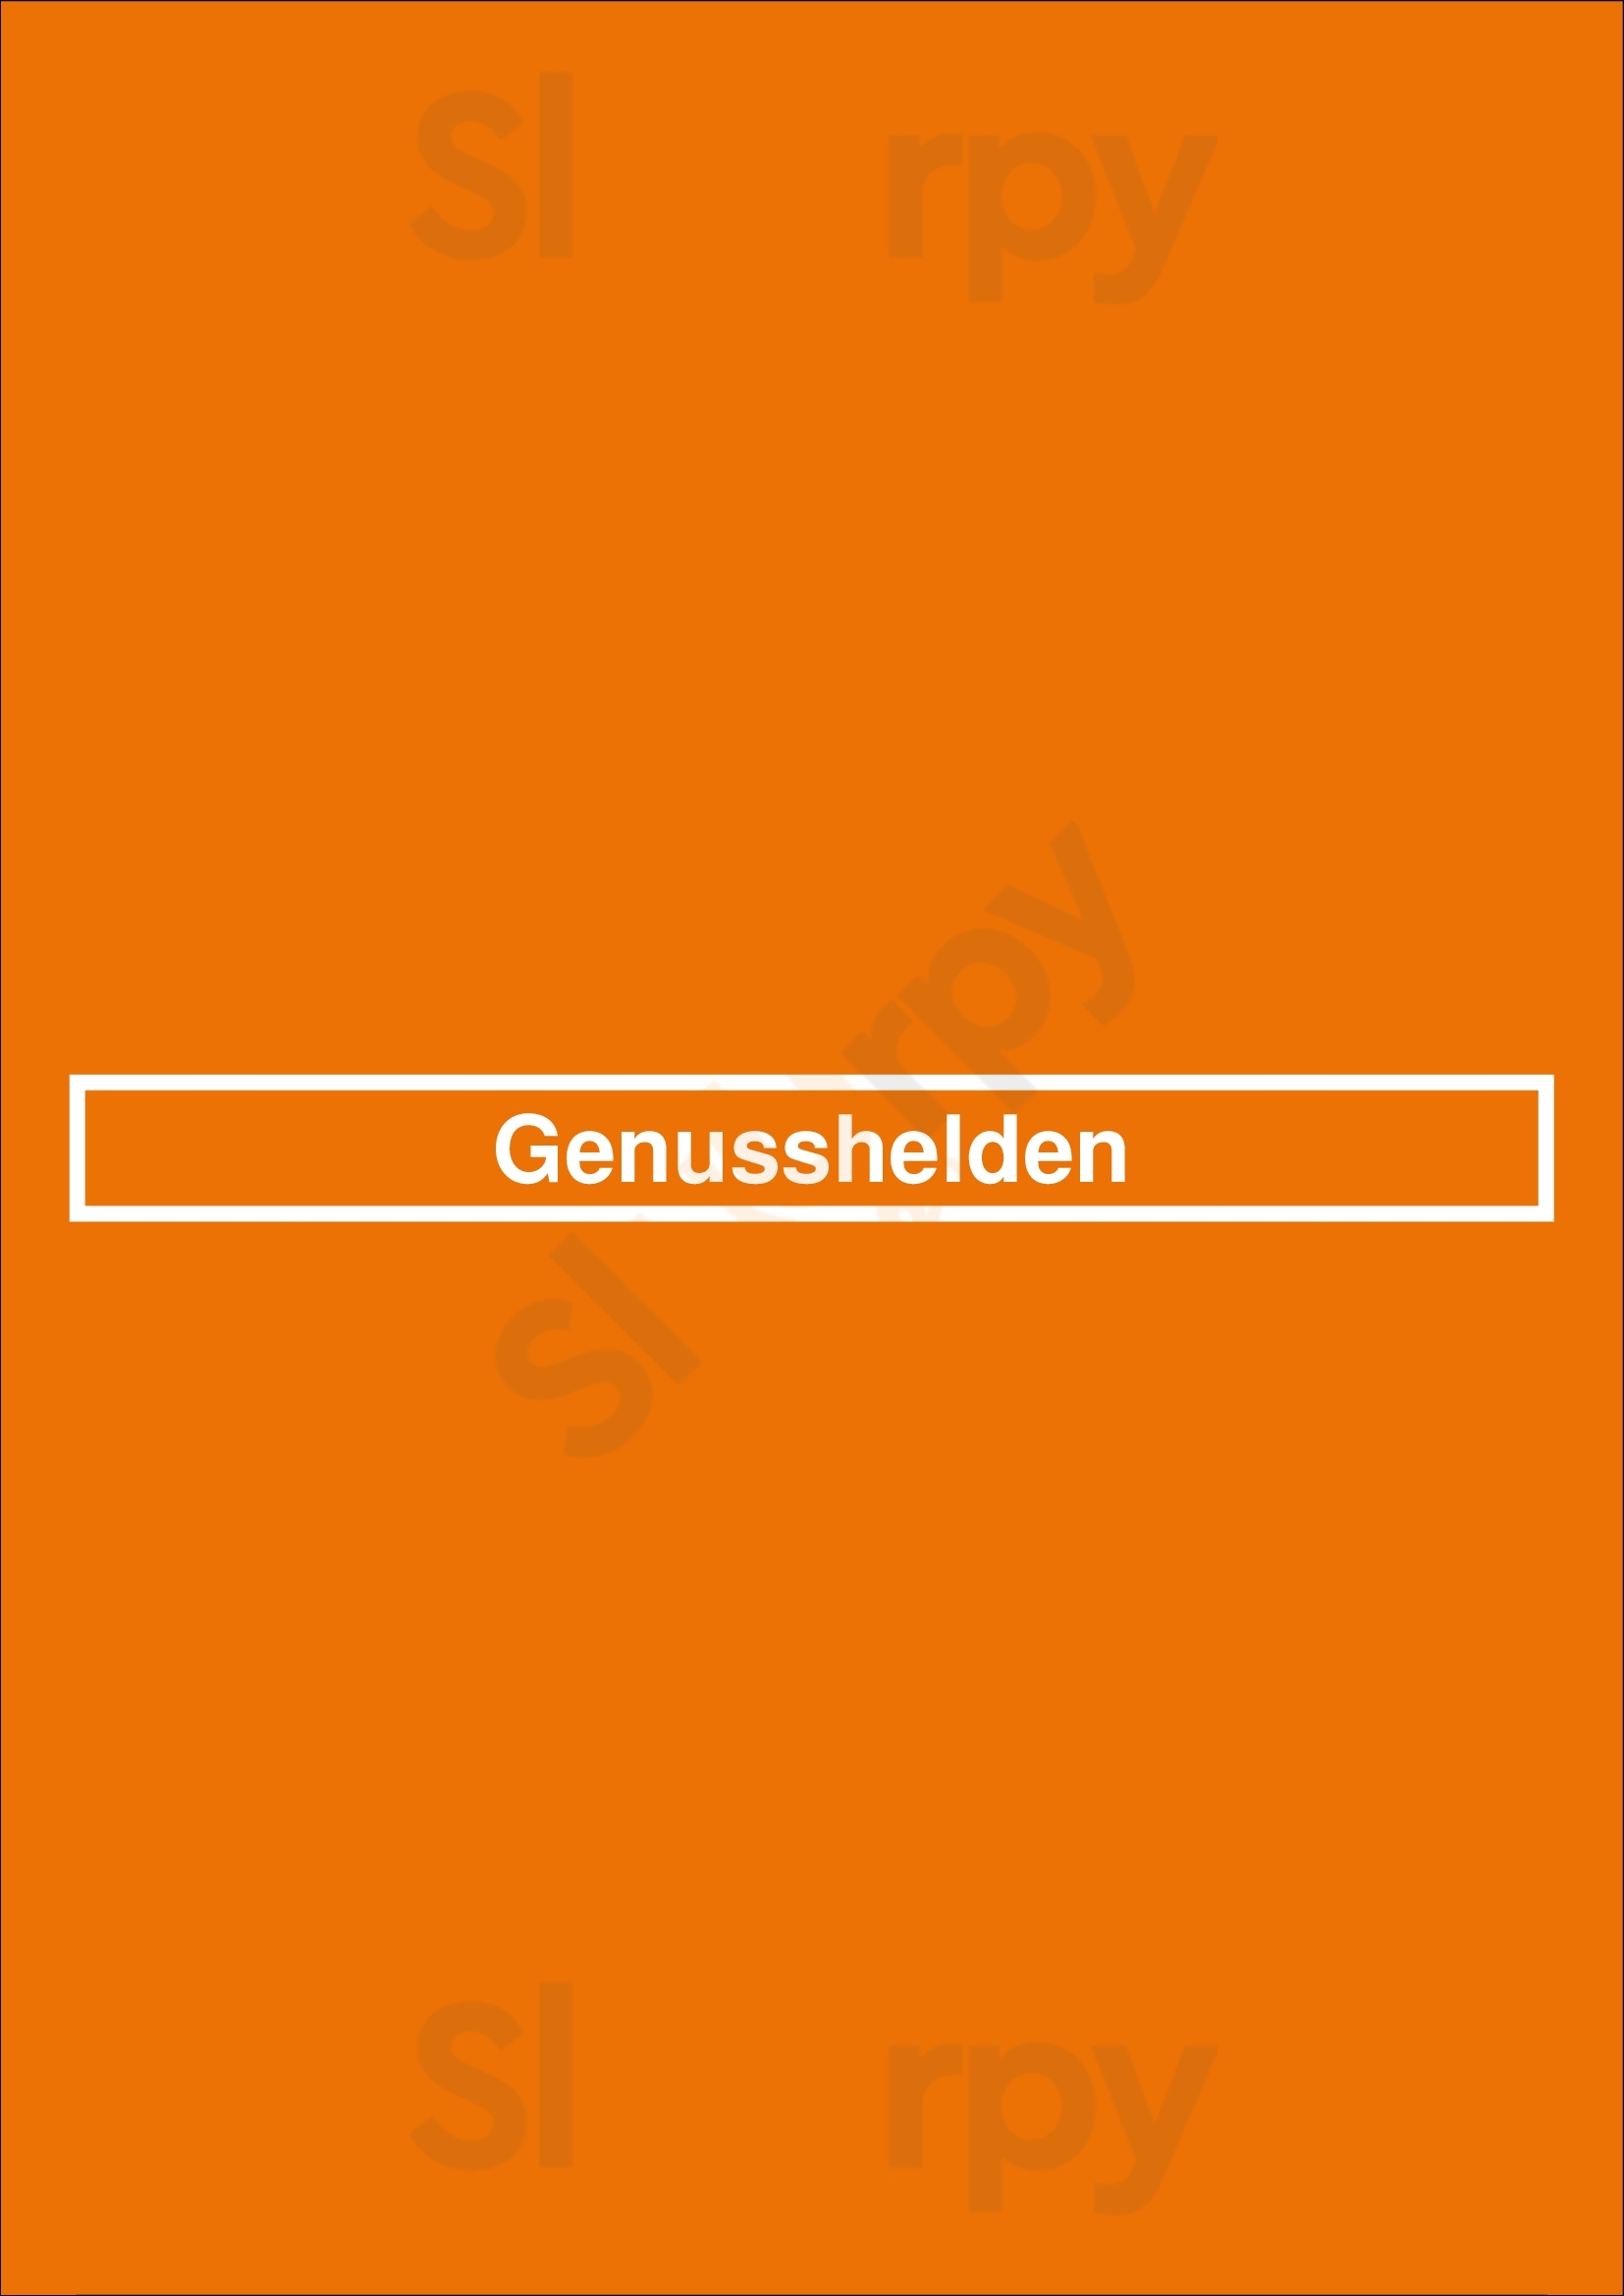 Genusshelden Hamburg Menu - 1